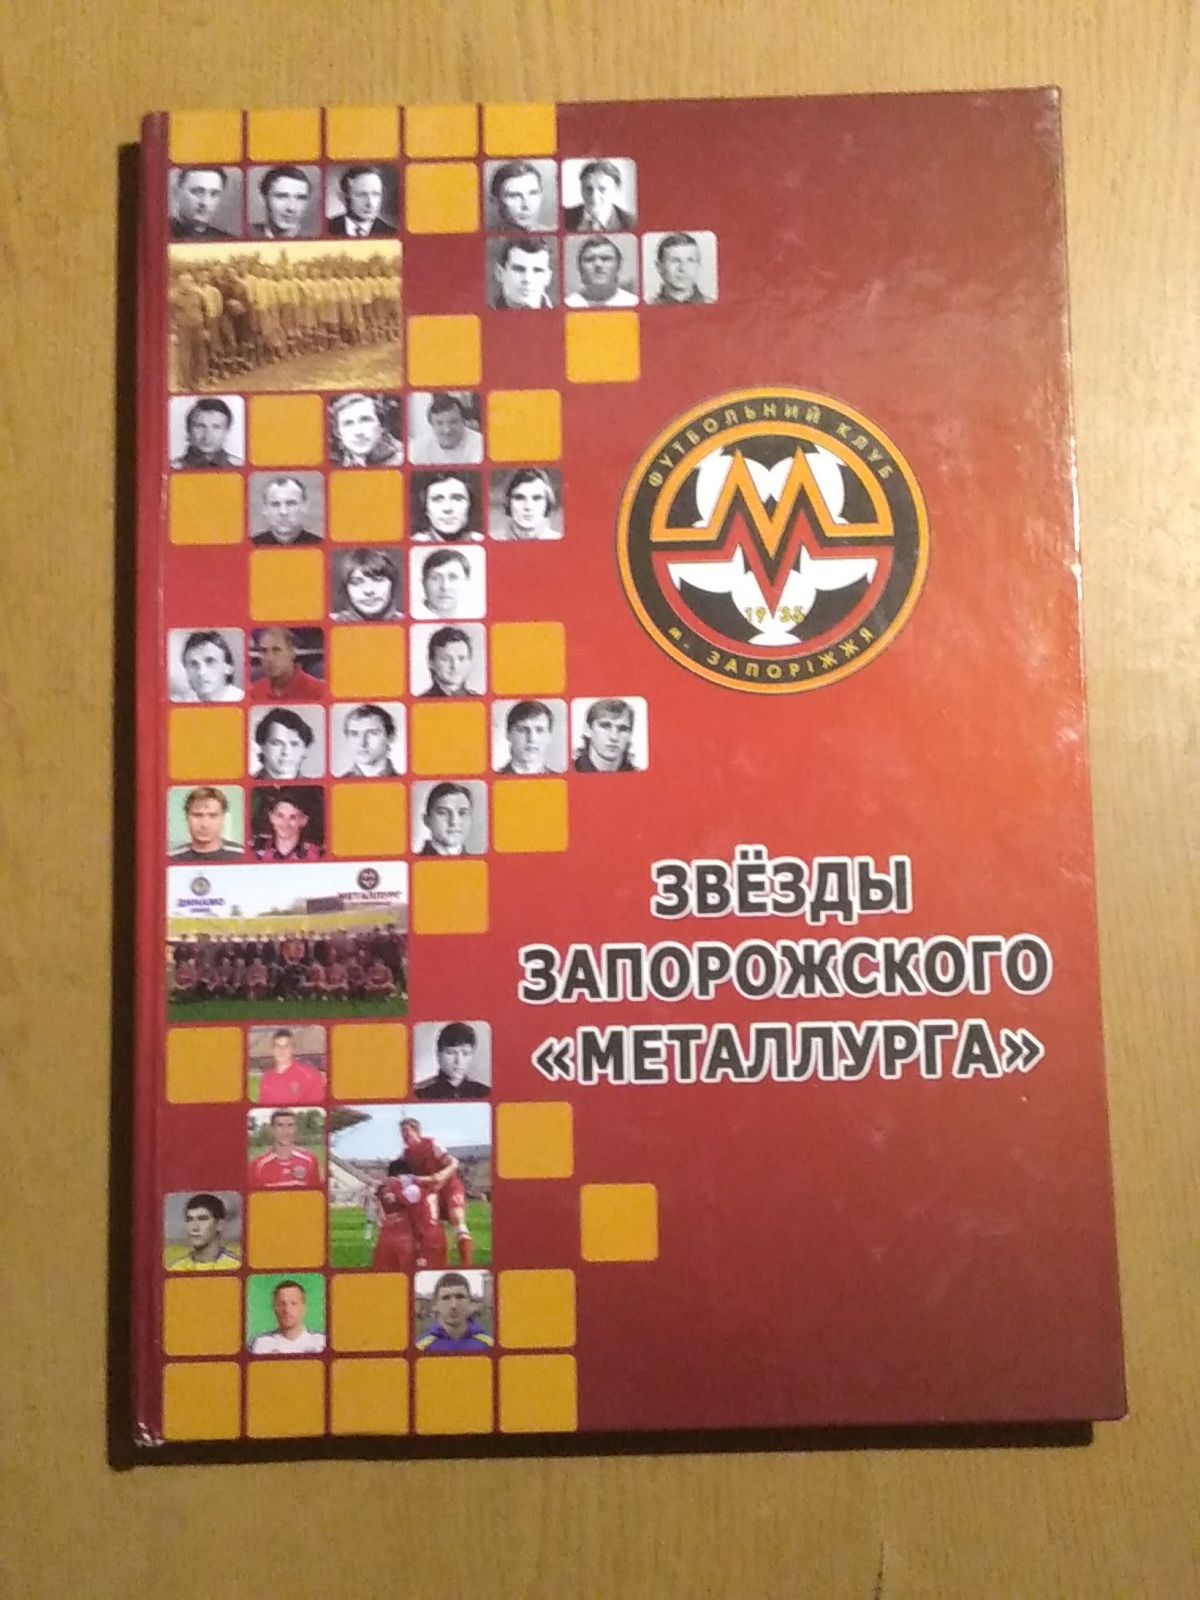 Книга футбольная "Звезды Запорожского Металлурга" футбол спорт